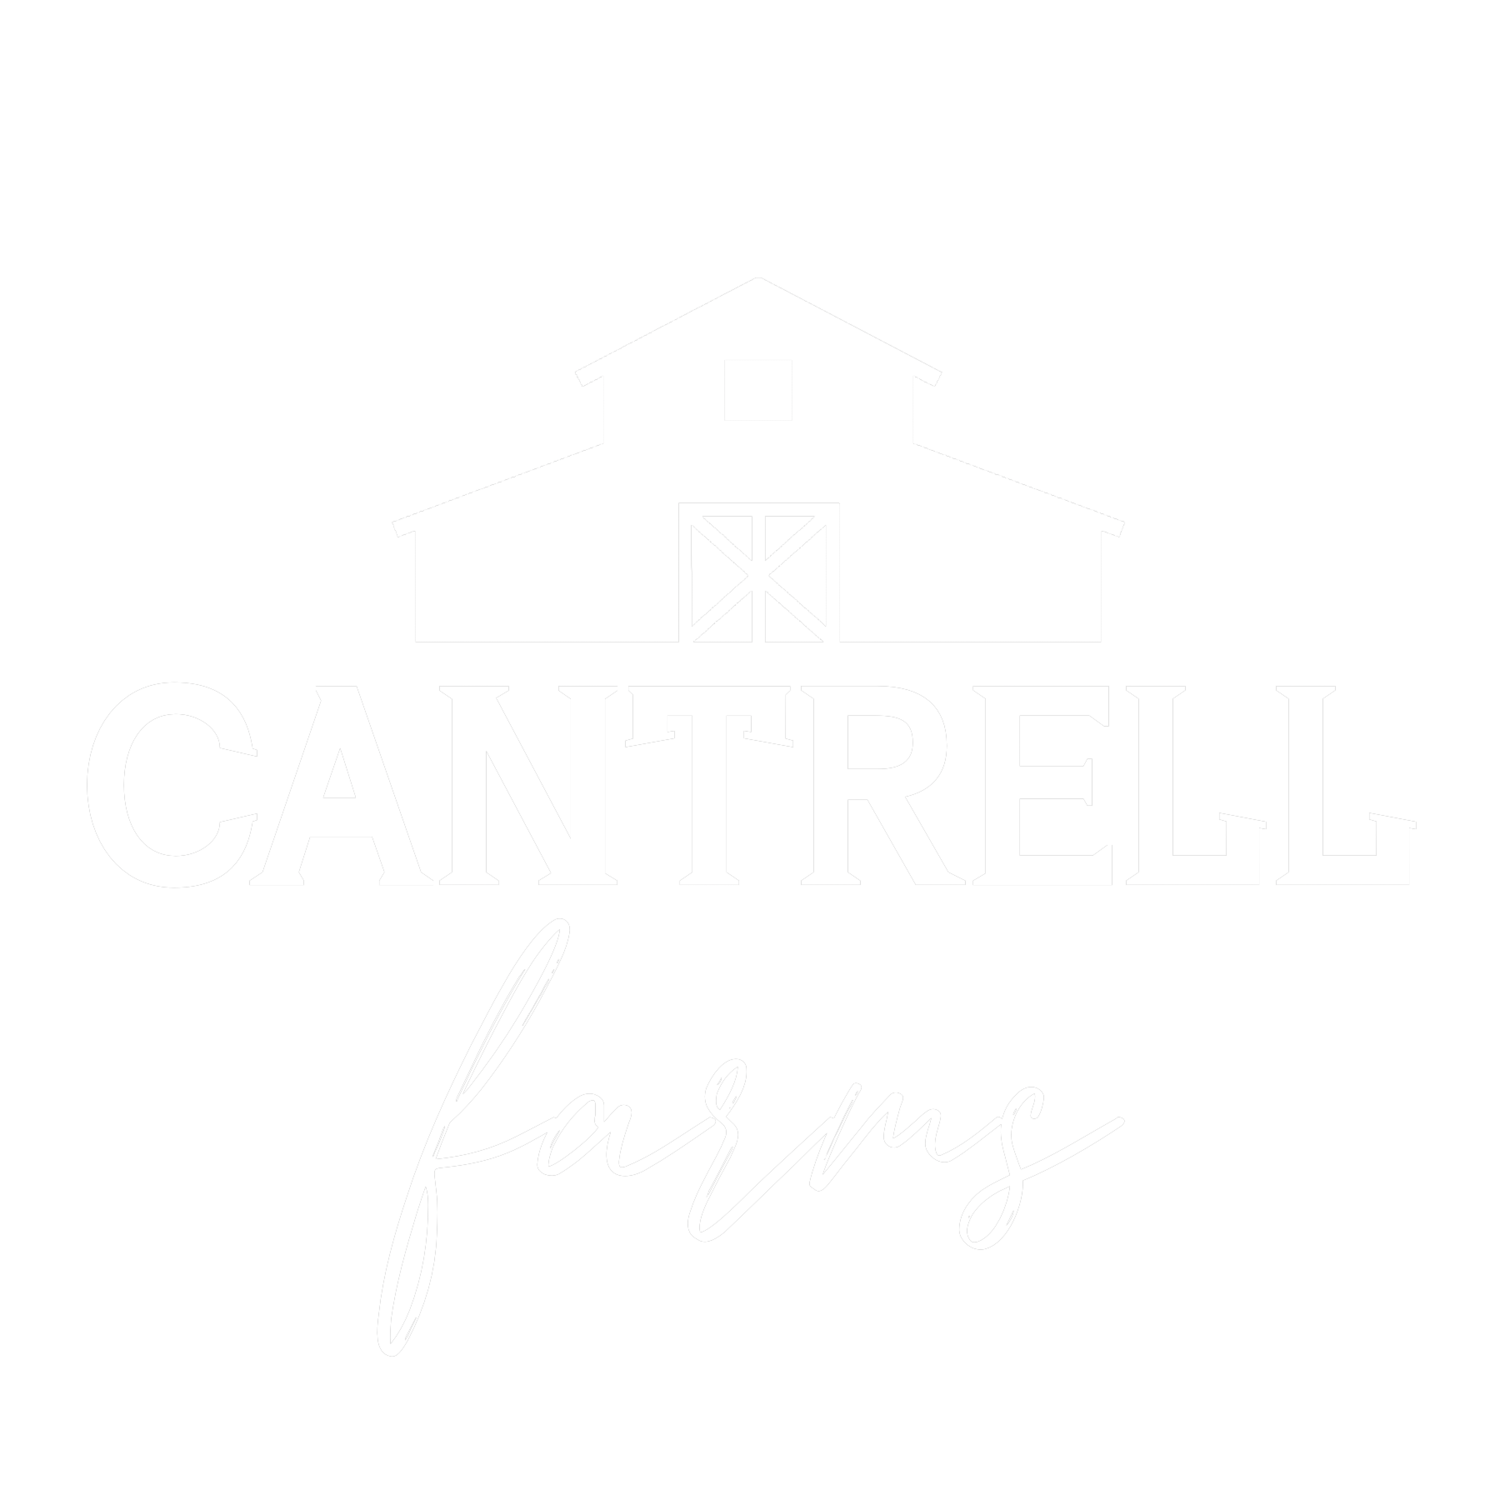 CANTRELL FARMS